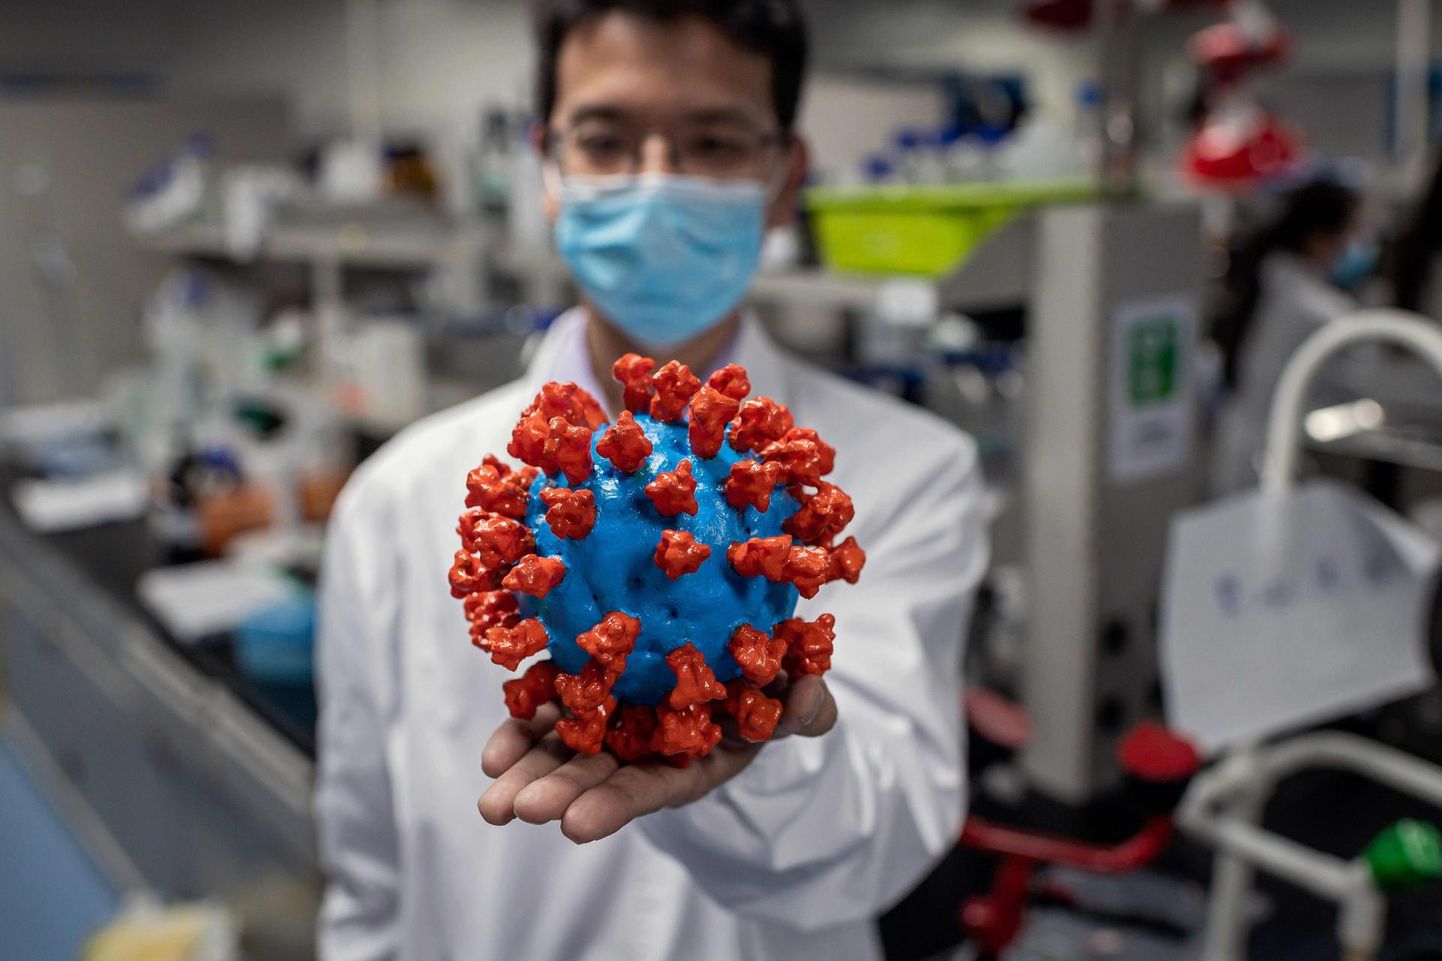 Hiina teadlane näitamas koroonaviiruse plastikmudelit.